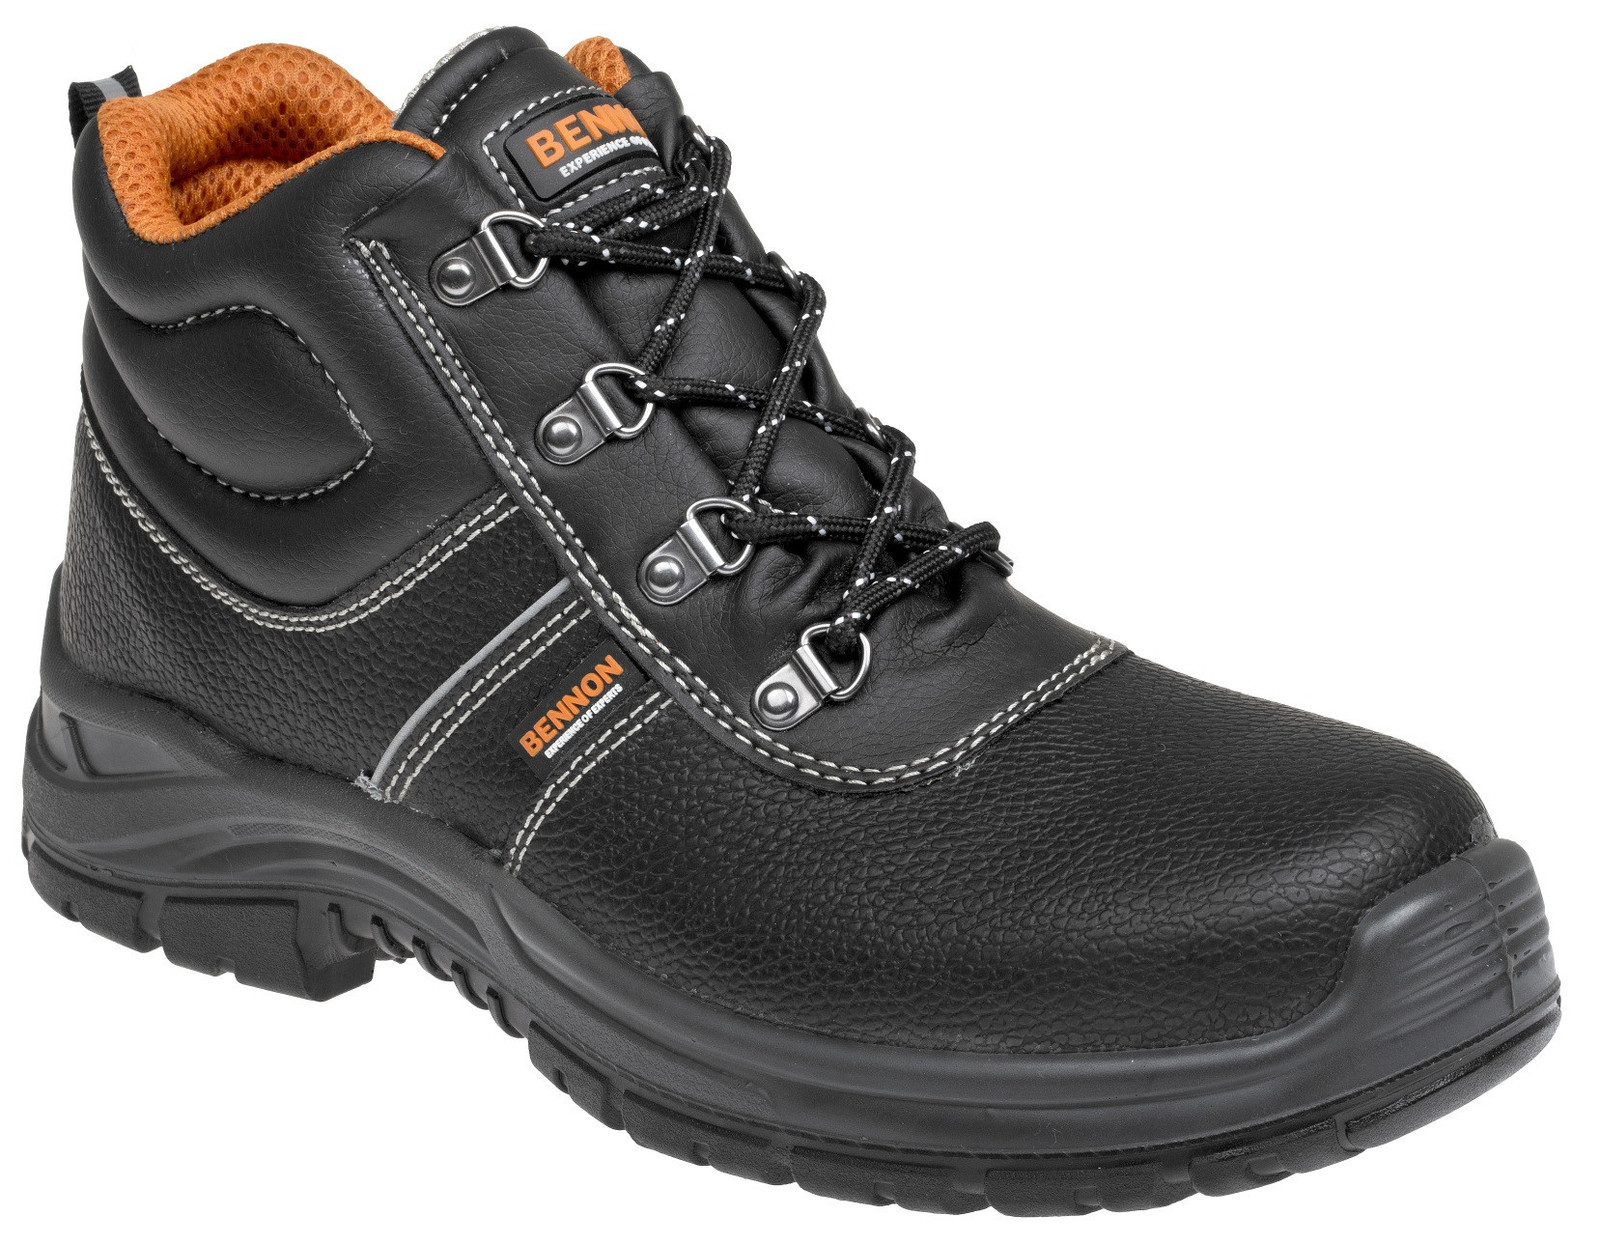 Bezpečnostná obuv Bennon Basic S3 - veľkosť: 43, farba: čierna